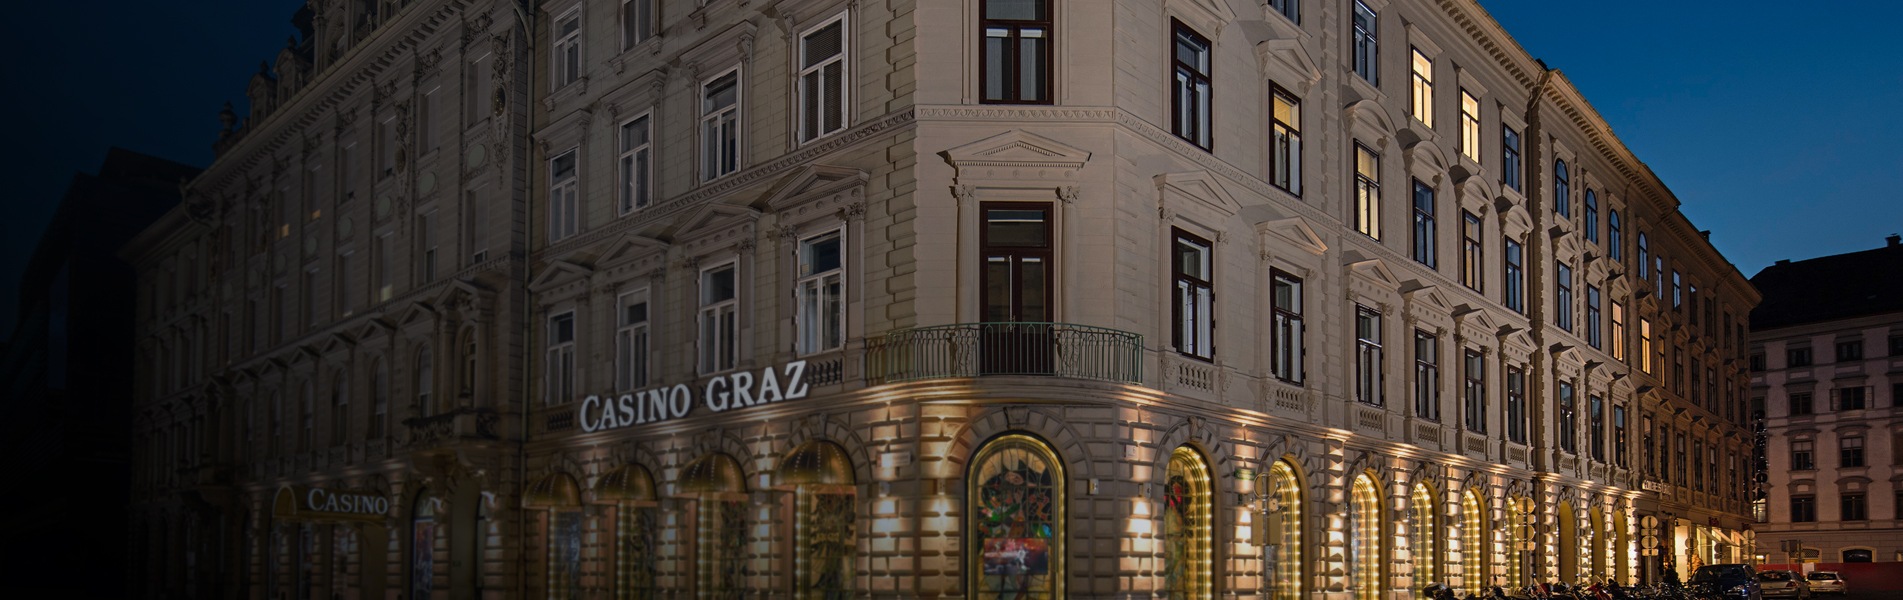 Casino Graz 1